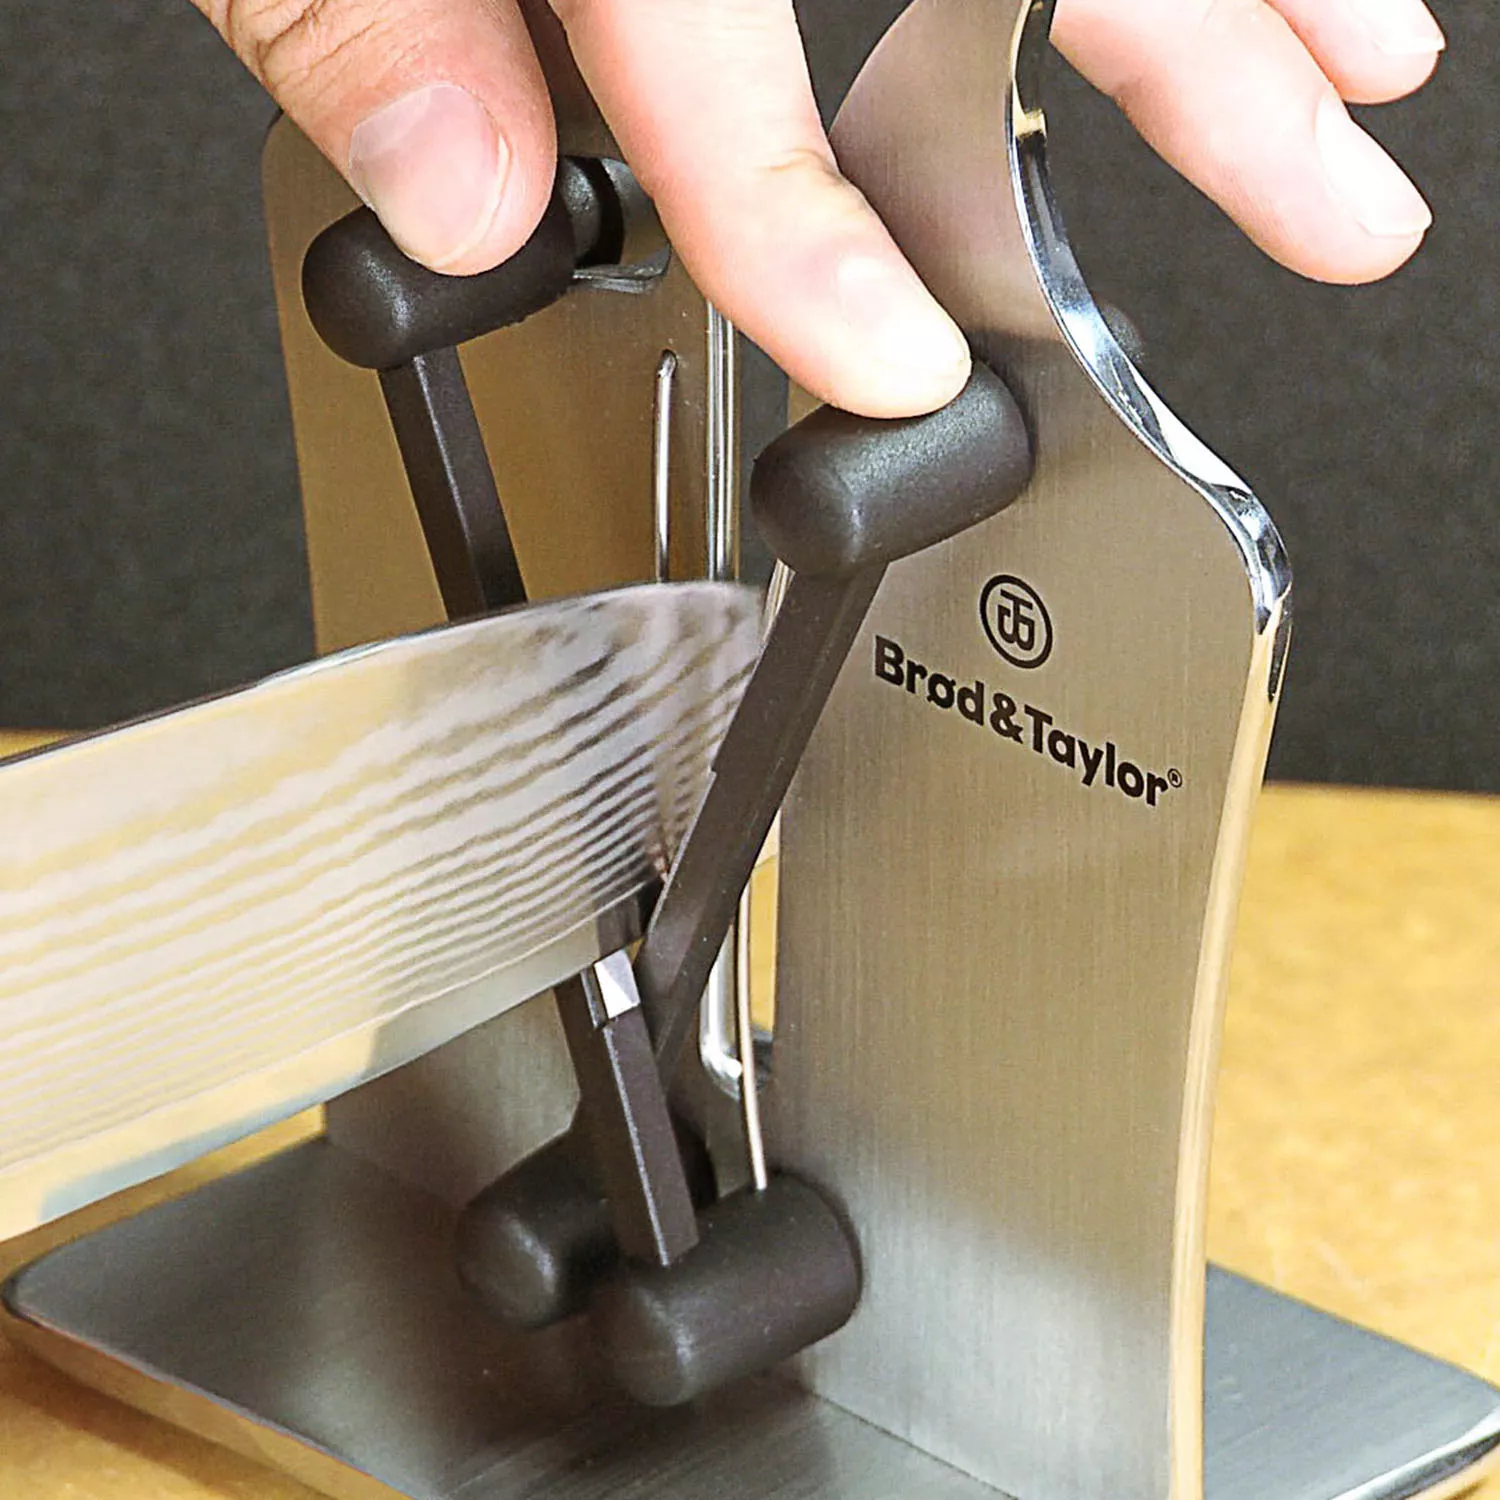 Brod & Taylor Manual Knife Sharpener